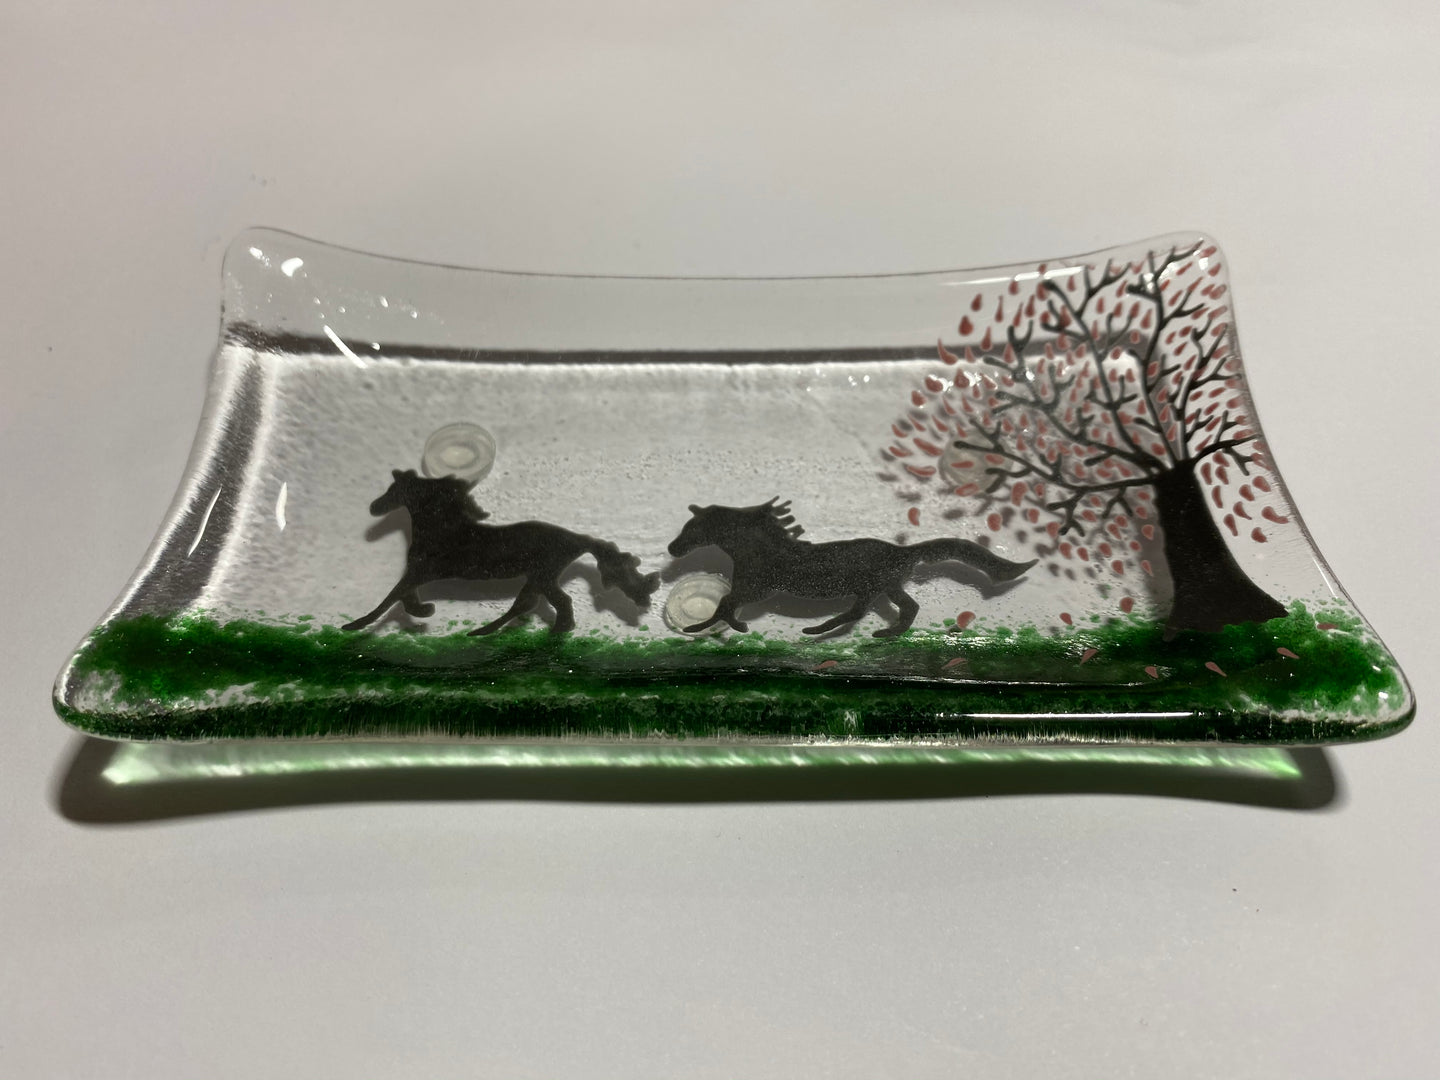 Running horses soap dish / trinket tray